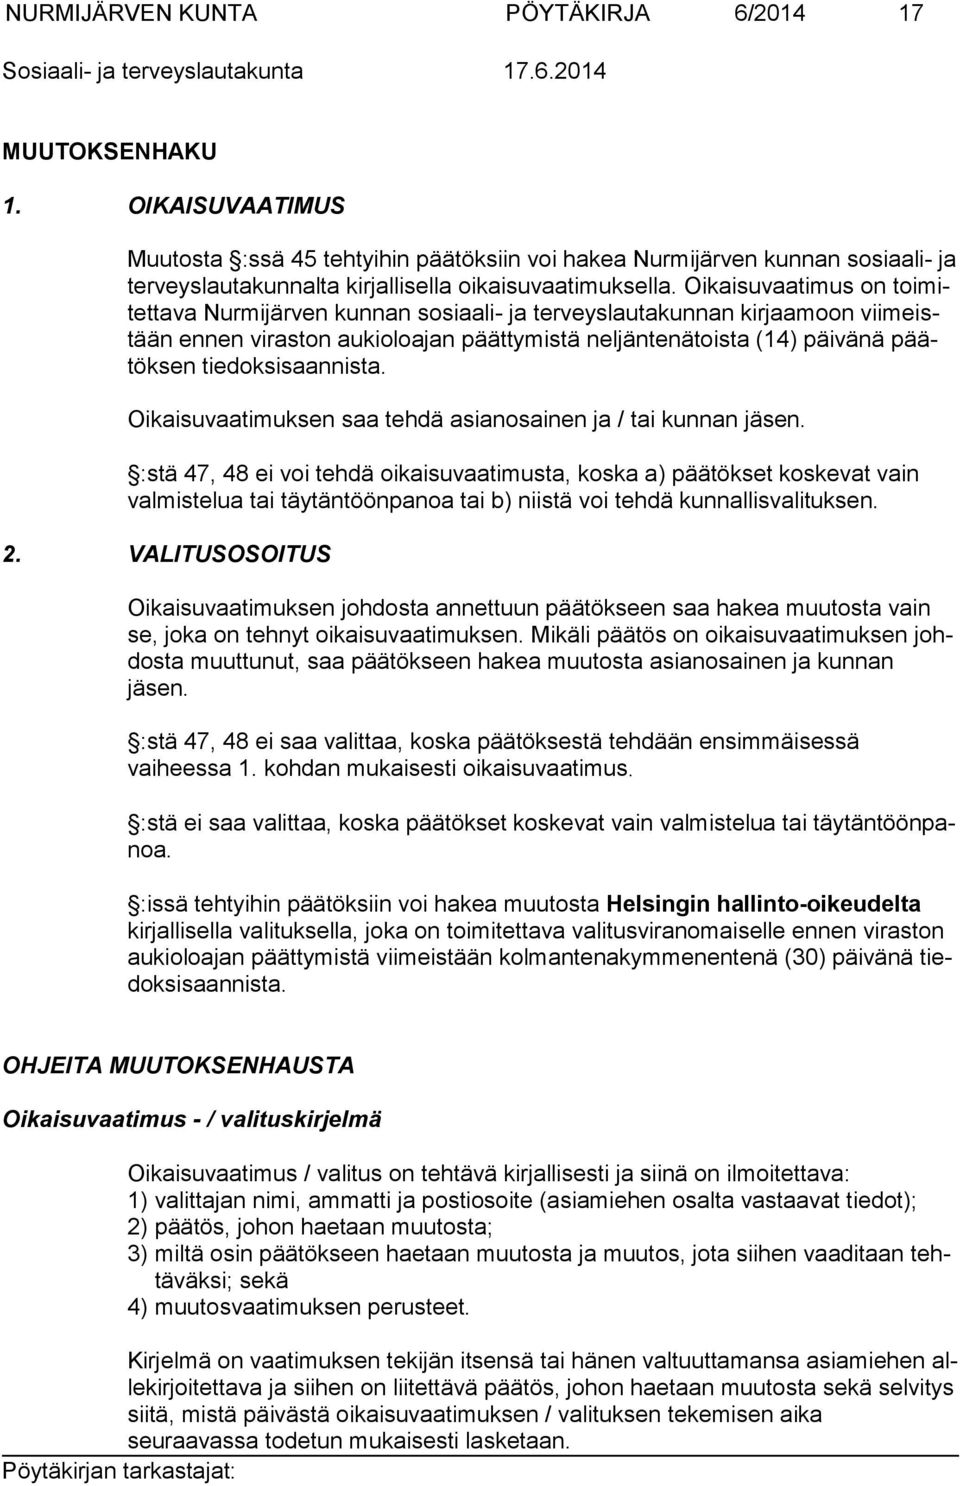 Oikaisuvaatimus on toimitettava Nurmijärven kunnan sosiaali- ja terveyslautakunnan kirjaamoon viimeistään ennen viraston aukioloajan päättymistä neljäntenätoista (14) päivänä päätöksen